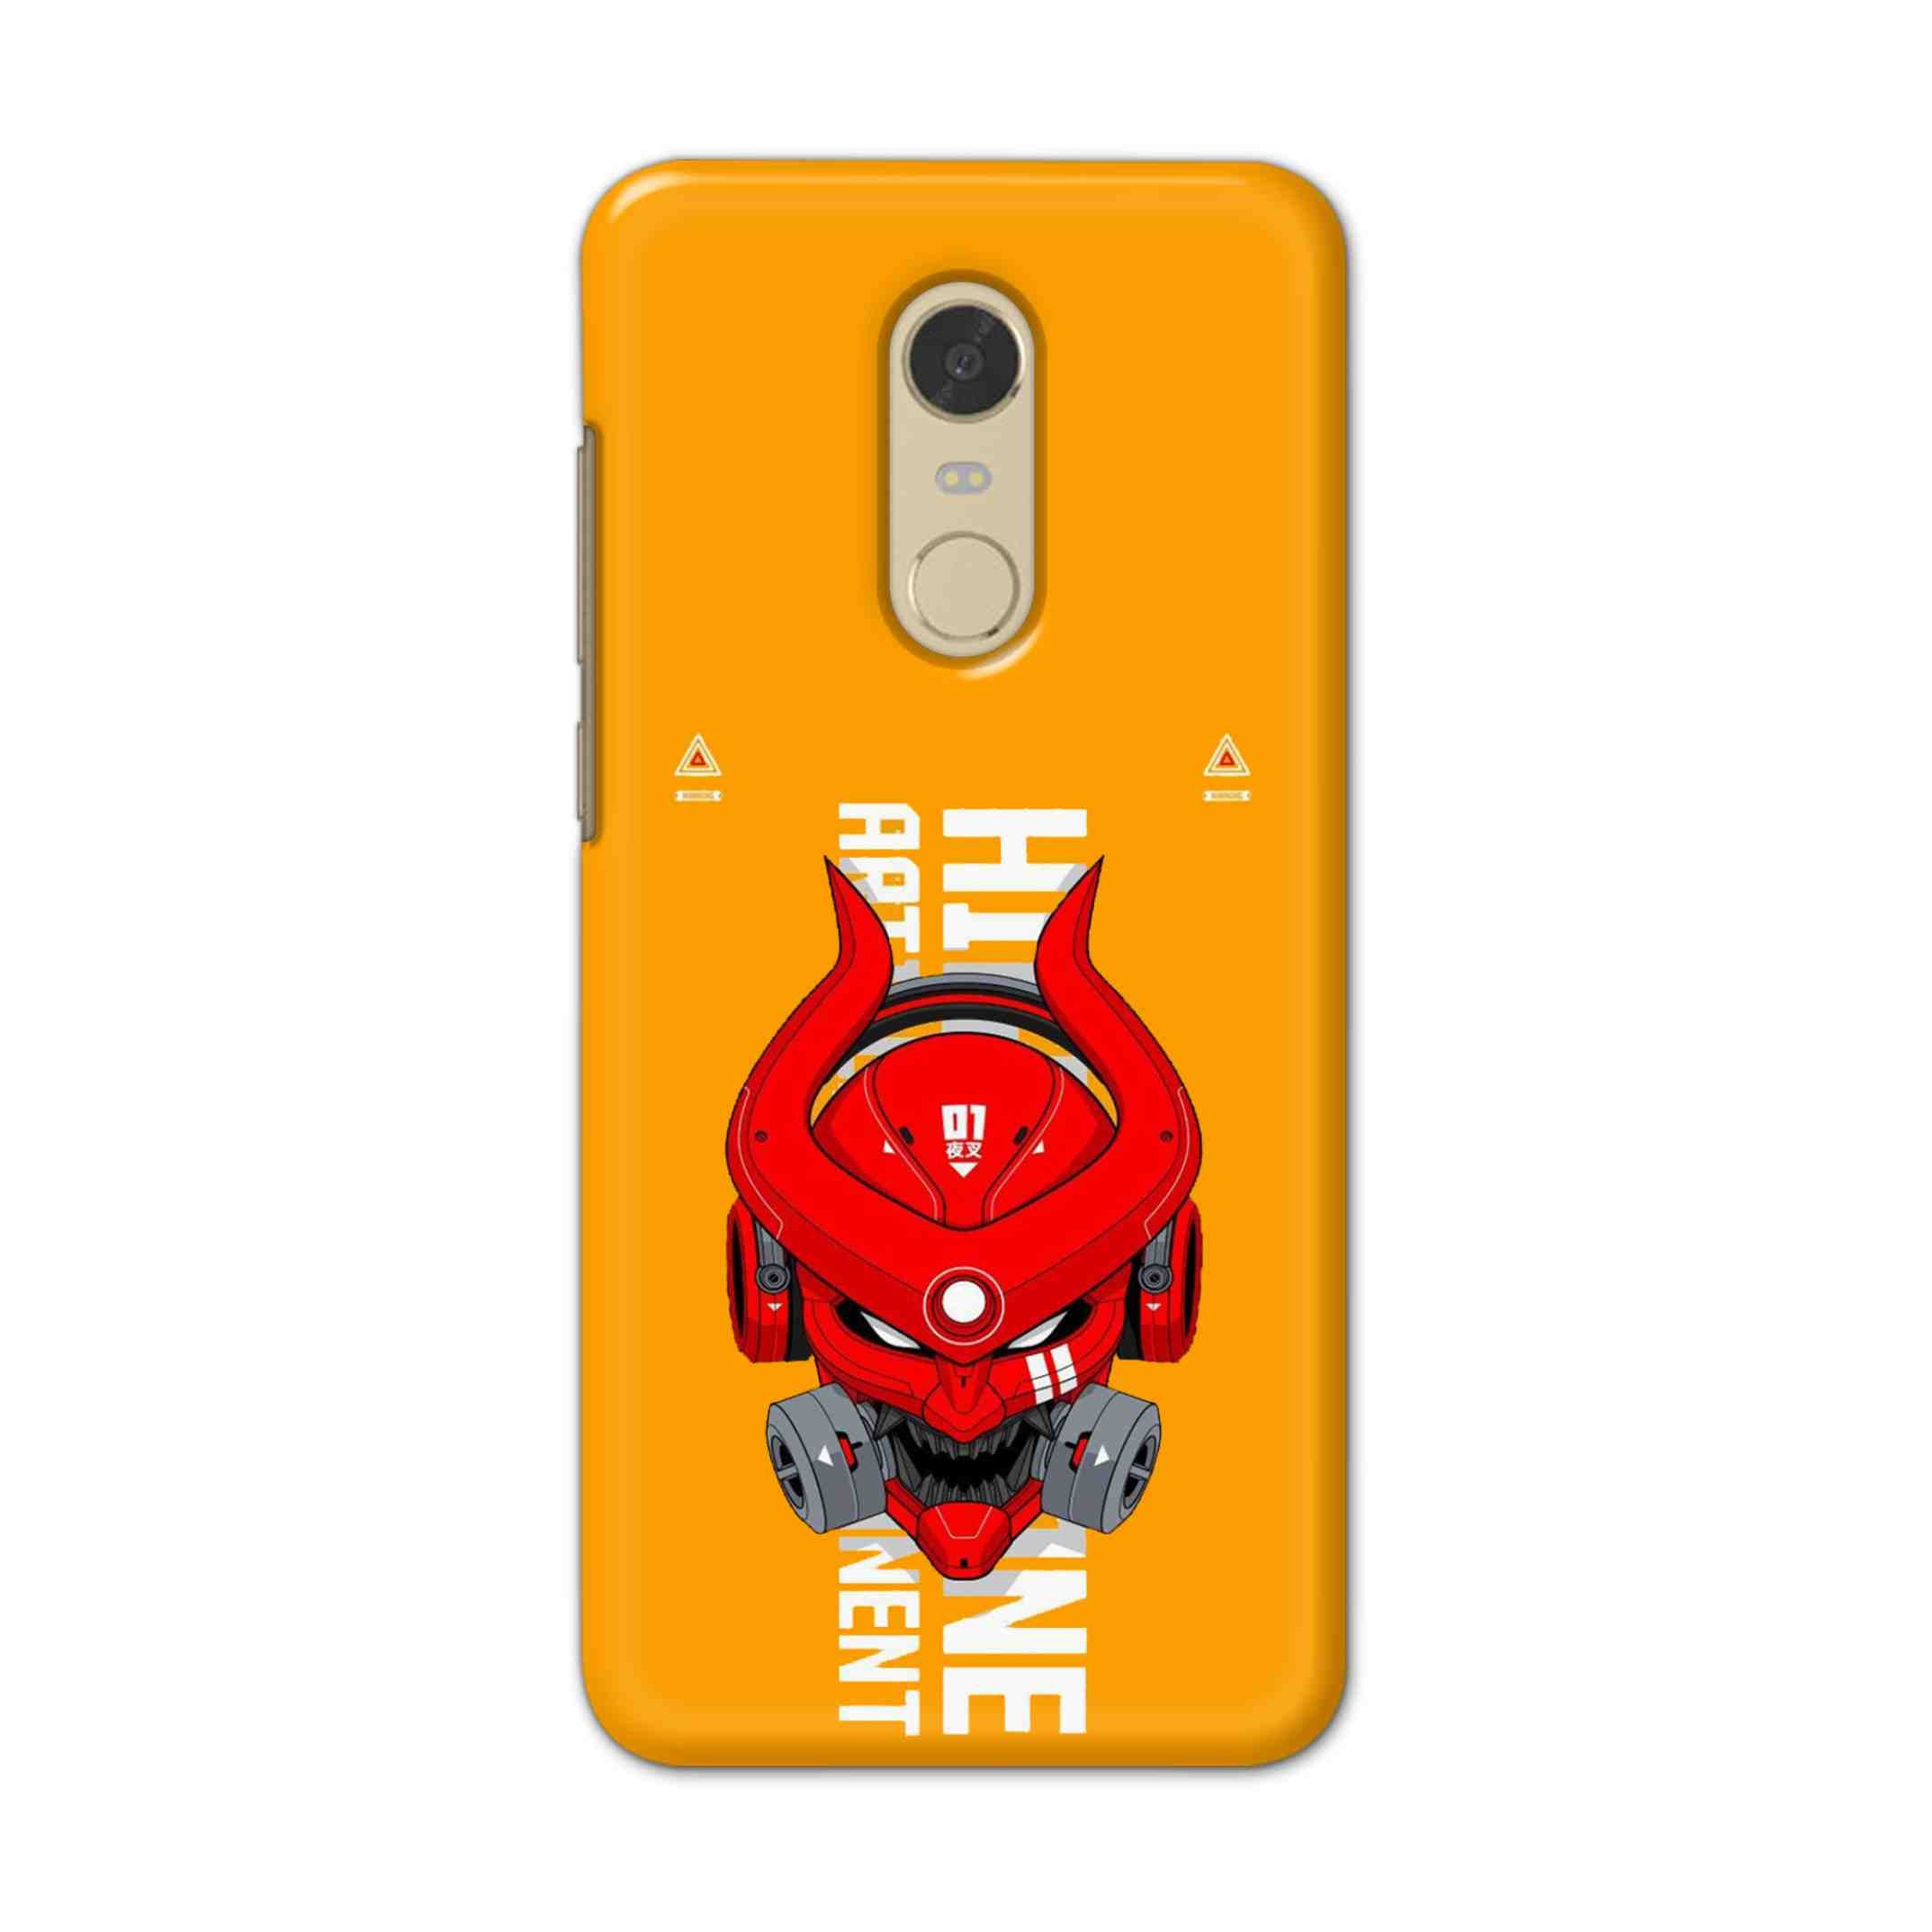 Buy Bull Skull Hard Back Mobile Phone Case/Cover For Redmi Note 6 Online